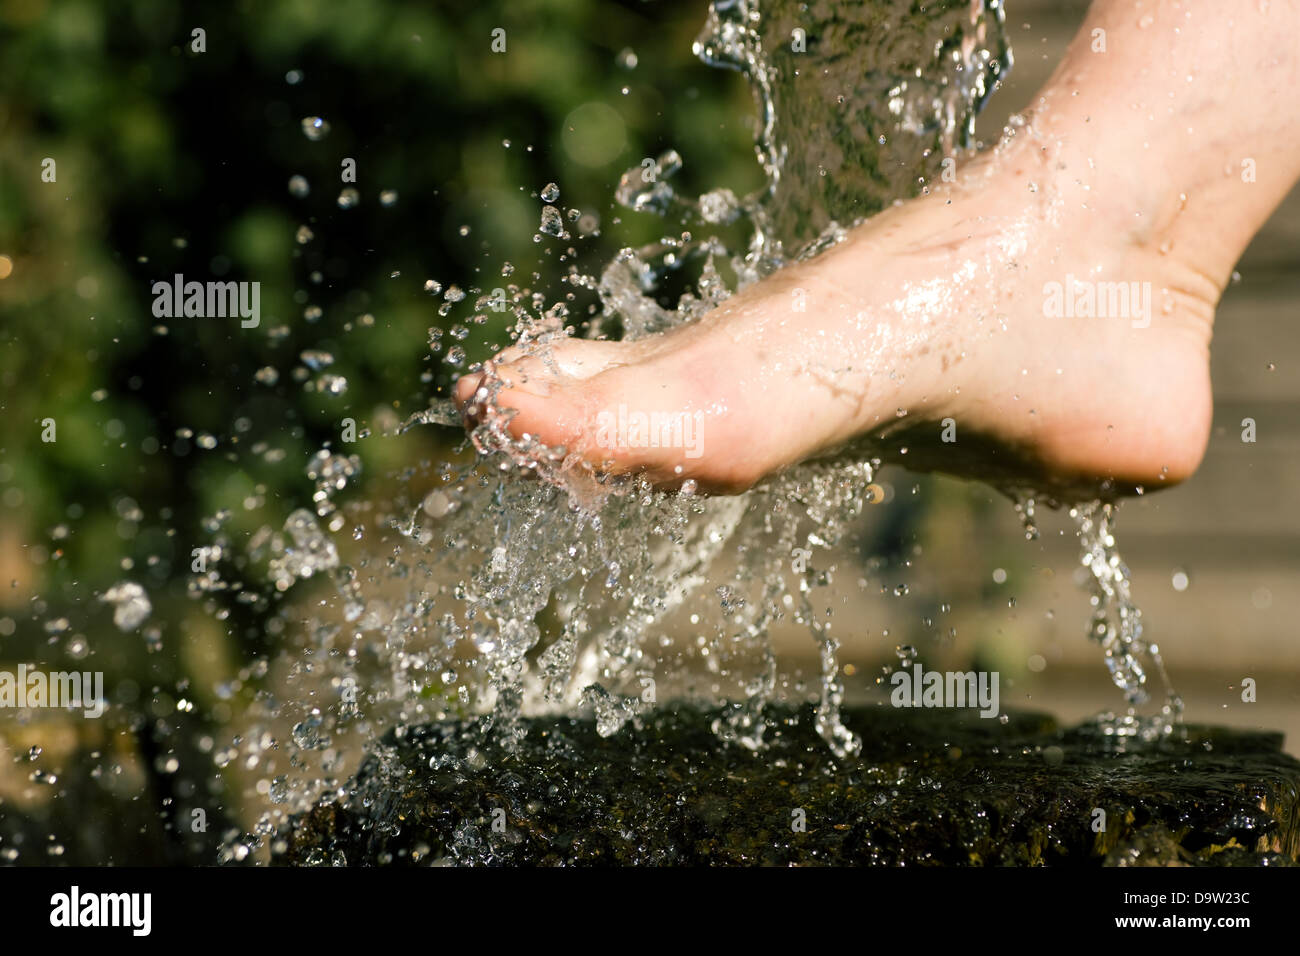 Spritzen mit kaltem Wasser geduscht auf Füßen in einer alternativen Therapie-Sitzung; Tropfen eingefroren Stockfoto